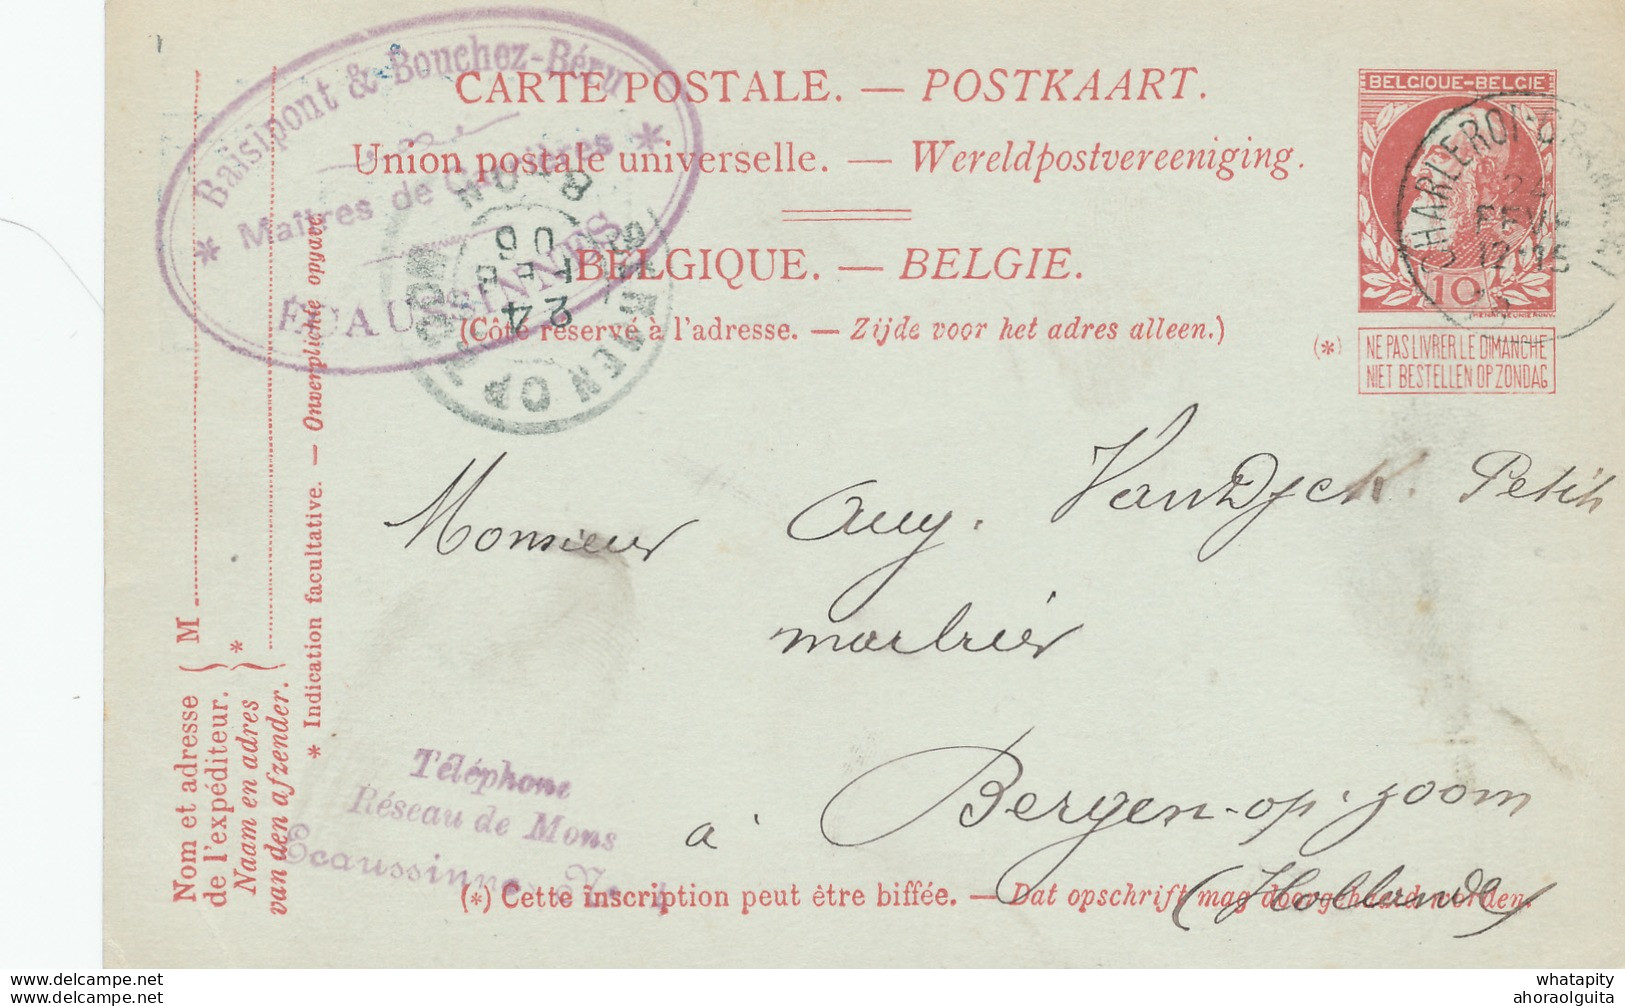 DDW704 - Entier Postal Grosse Barbe AMBULANT CHARLEROI-GRAMMONT 1906 - Cachet Maitres De Forges à ECAUSSINNES - Ambulantes